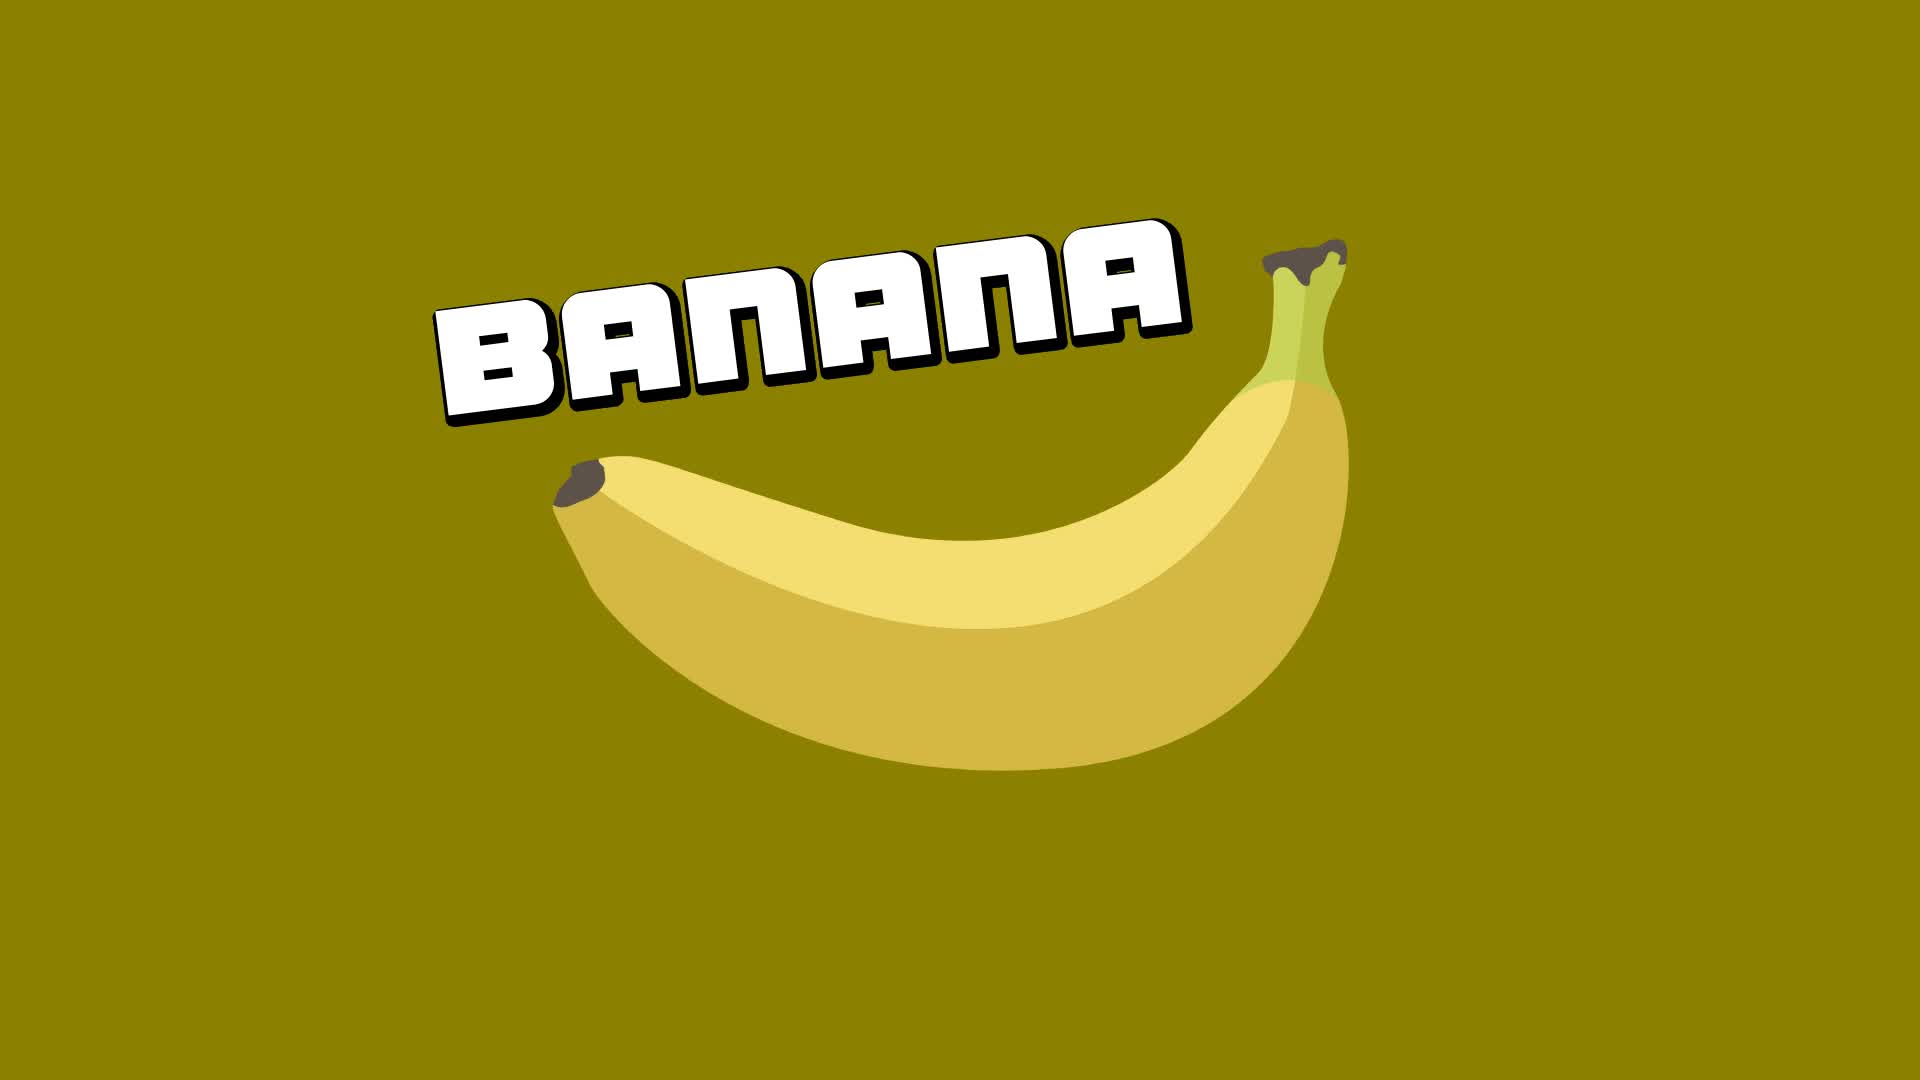 Кликер Banana стал самой популярной игрой в Steam